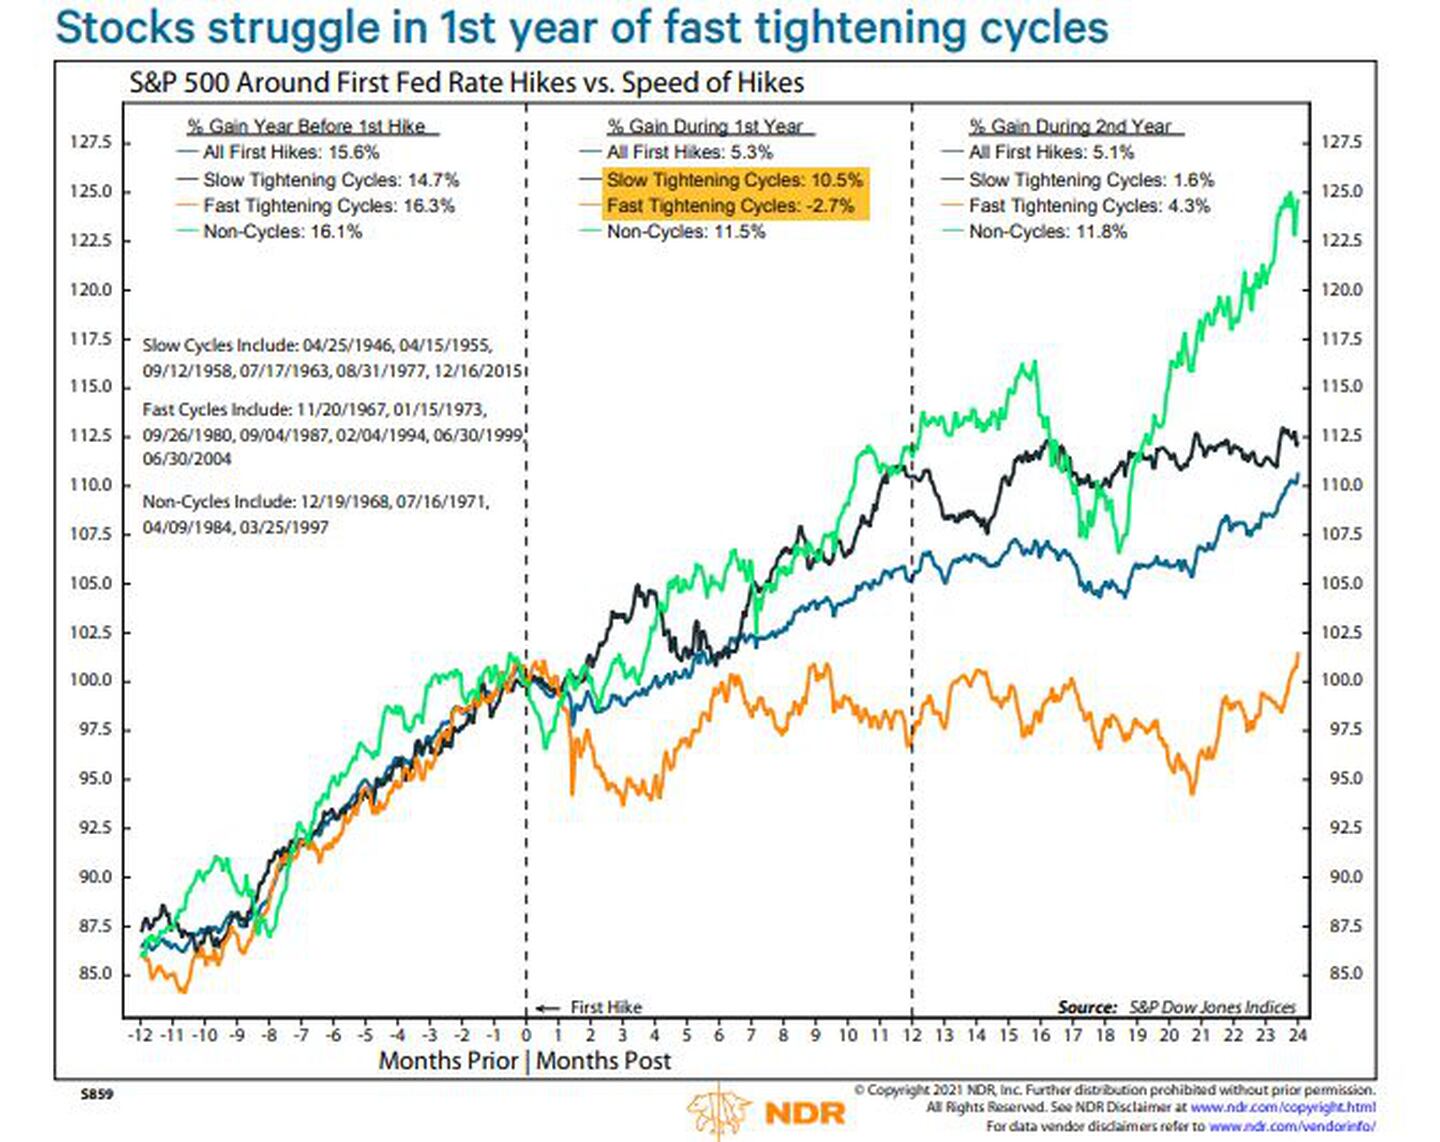 Las acciones luchan en el primer año de ciclos de endurecimiento rápido
S&P 500 en torno al primer tipo de interés de la Fed frente a la velocidad de las subidasdfd